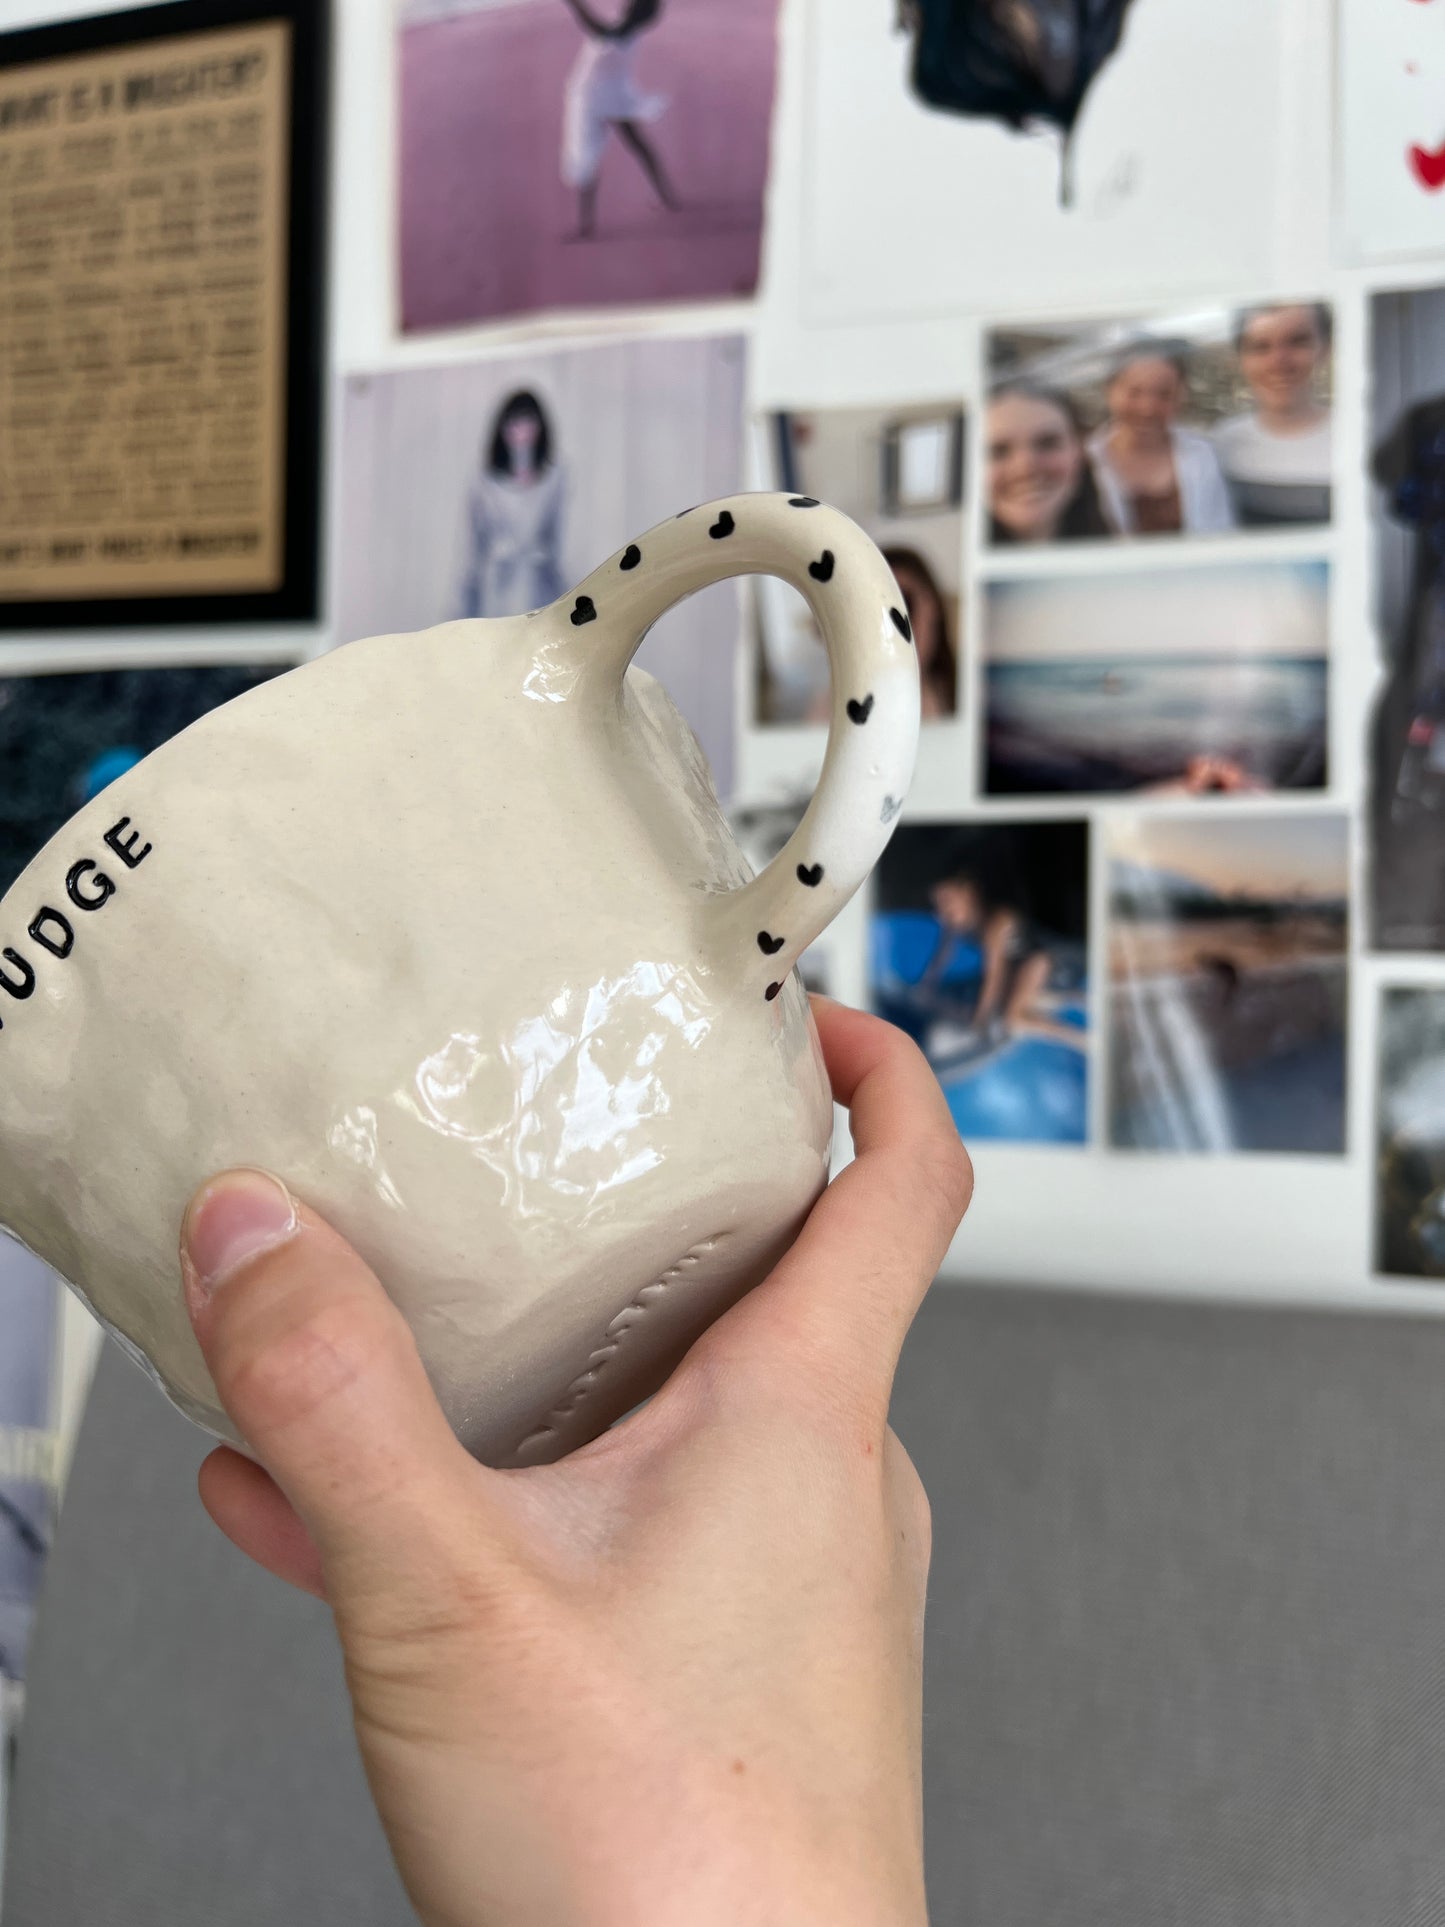 The grudge mug